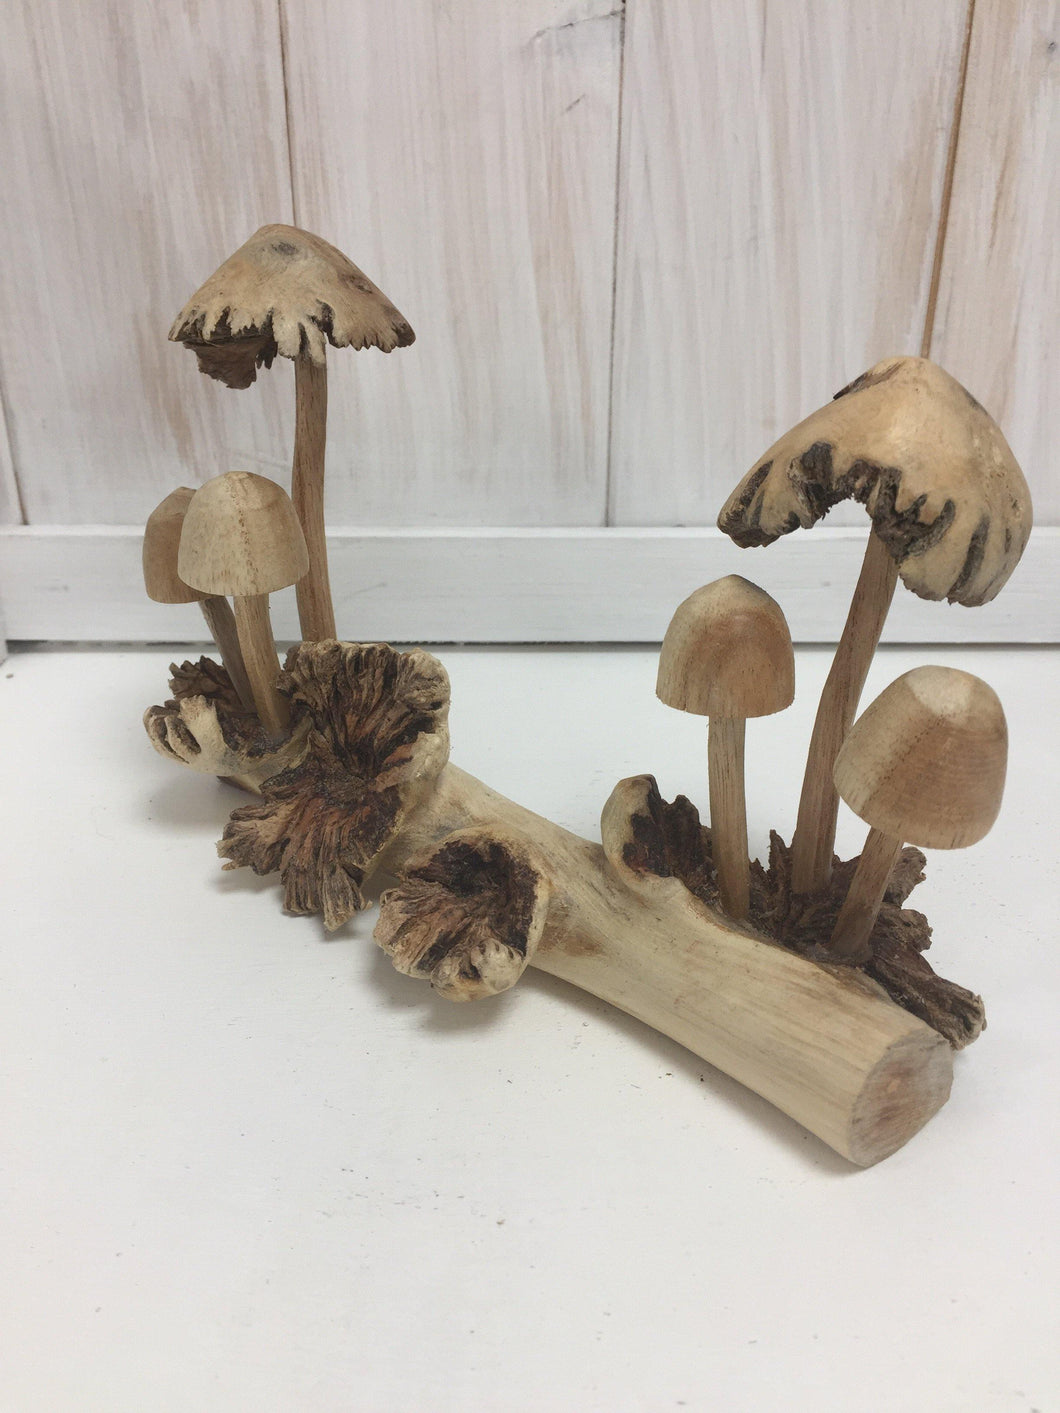 6 Mushrooms on a Log - The Coast Office